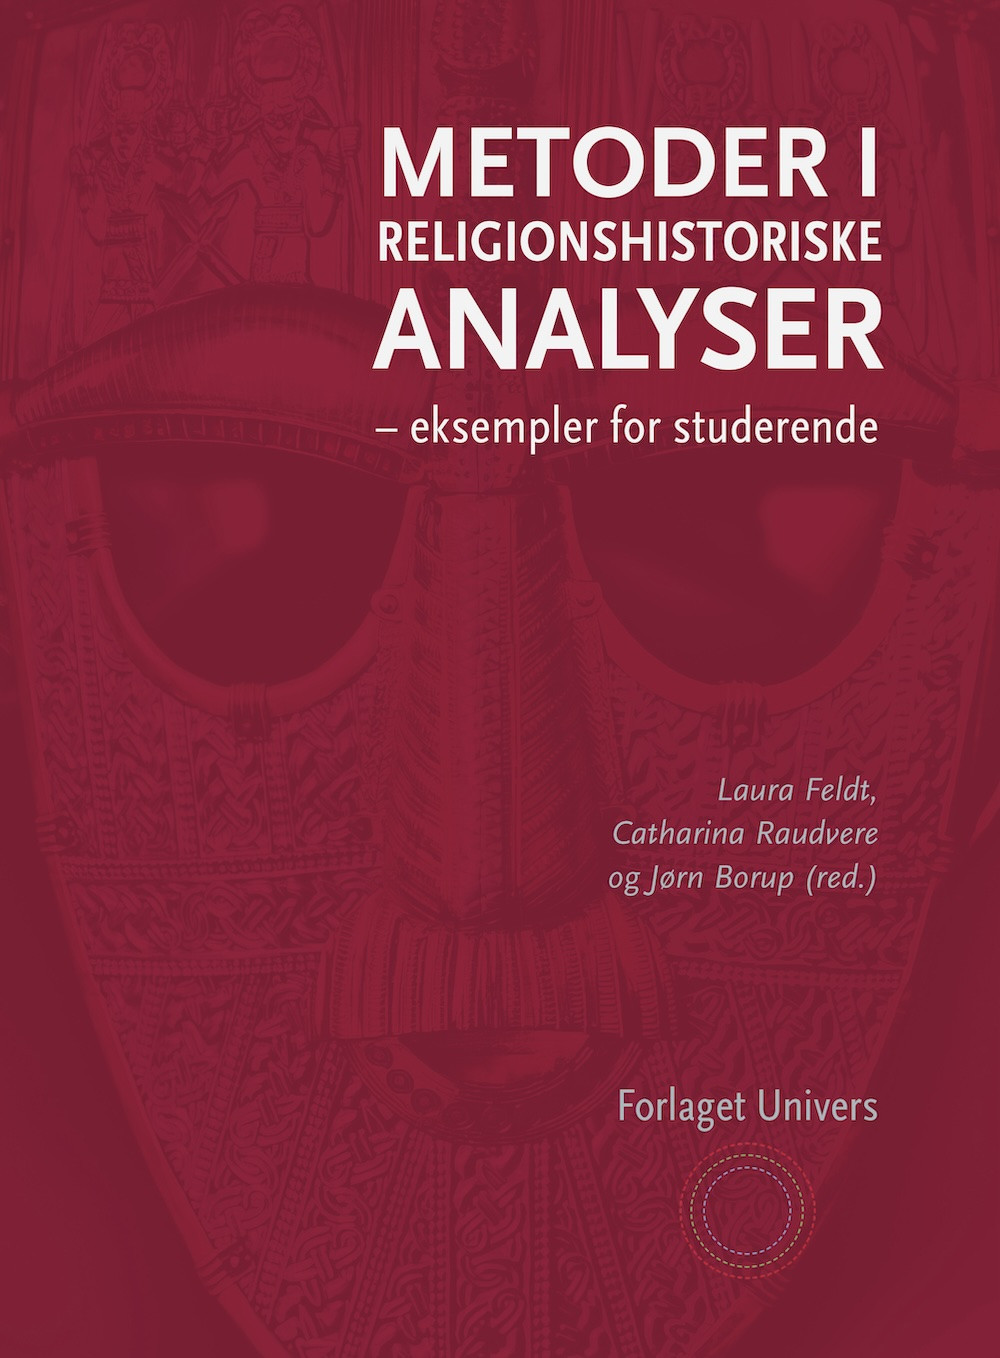 Metoder i religionshistoriske analyser  eksempler for studerende<br>Læs mere her